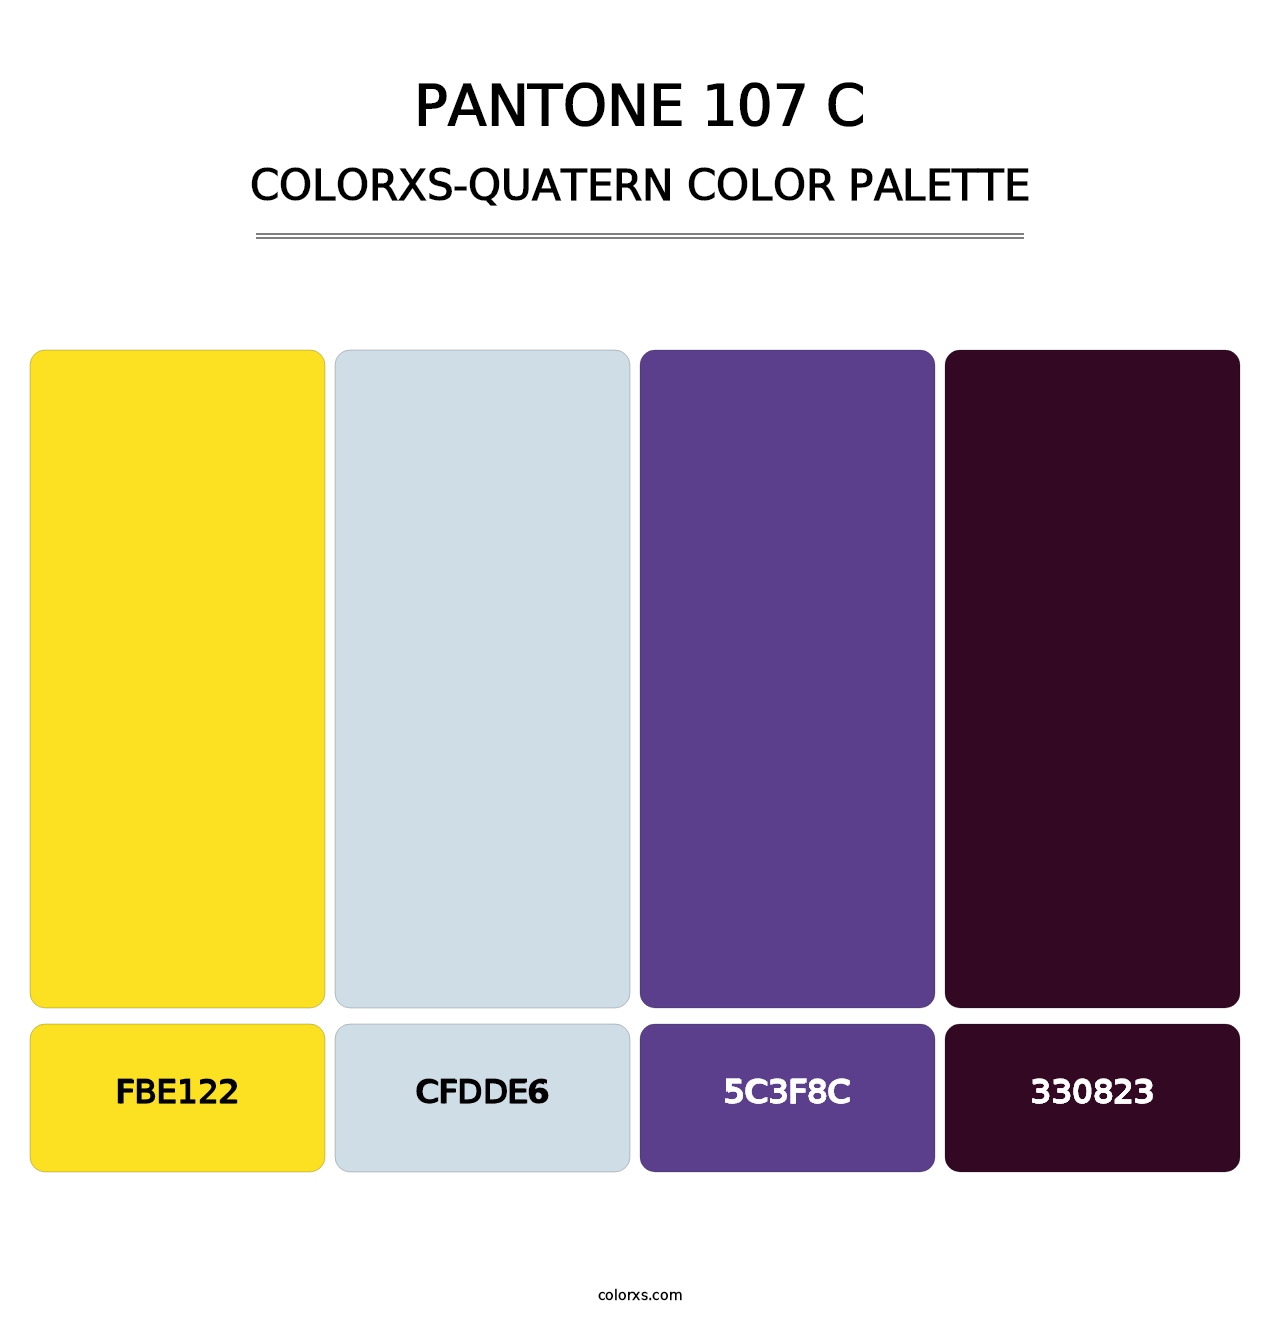 PANTONE 107 C - Colorxs Quatern Palette